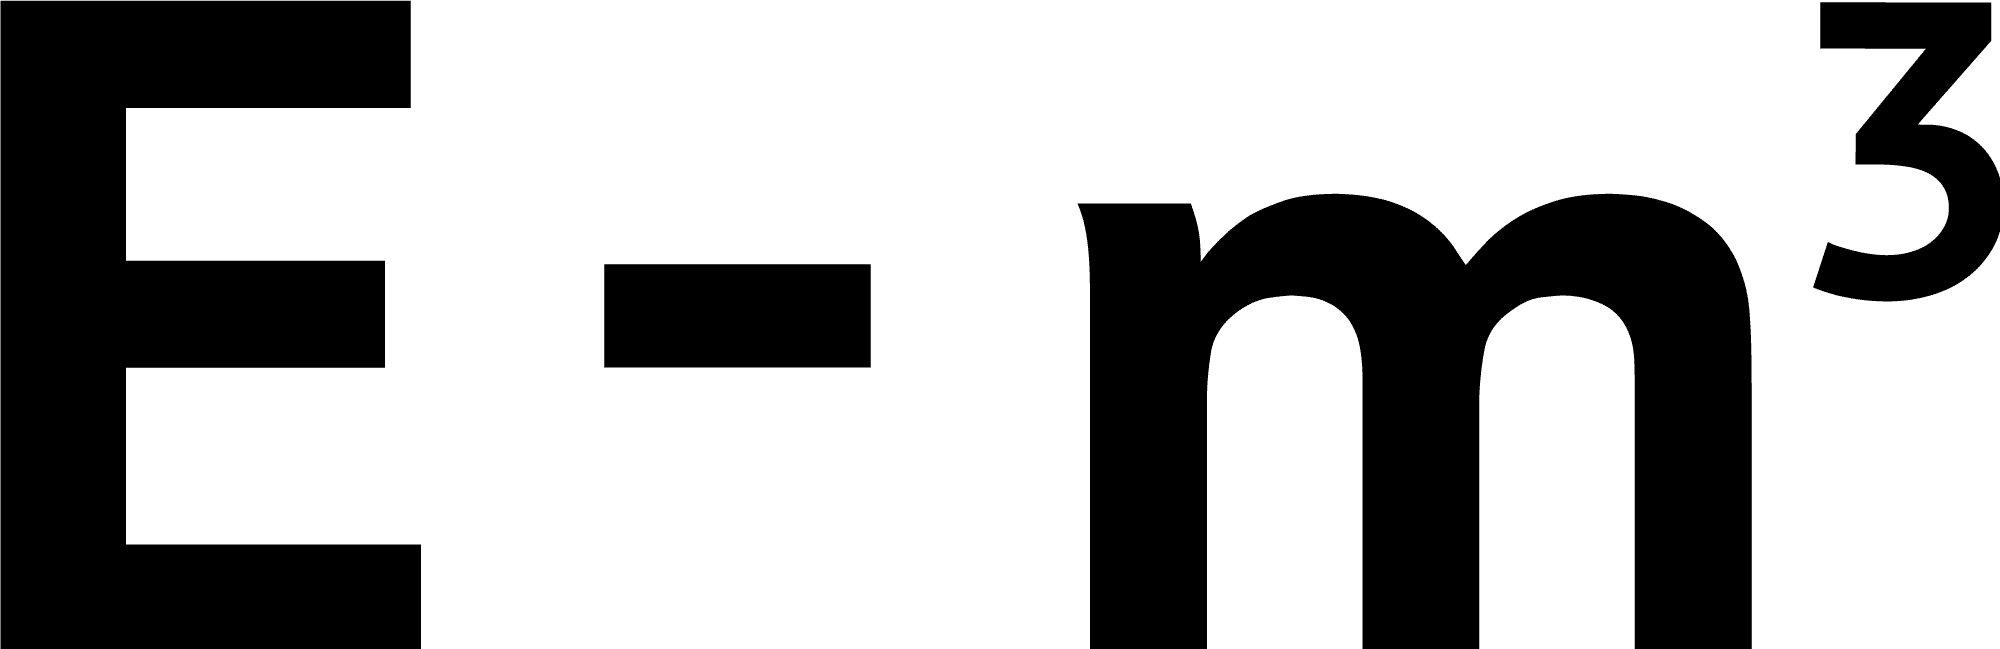 Marcona Em3 logo